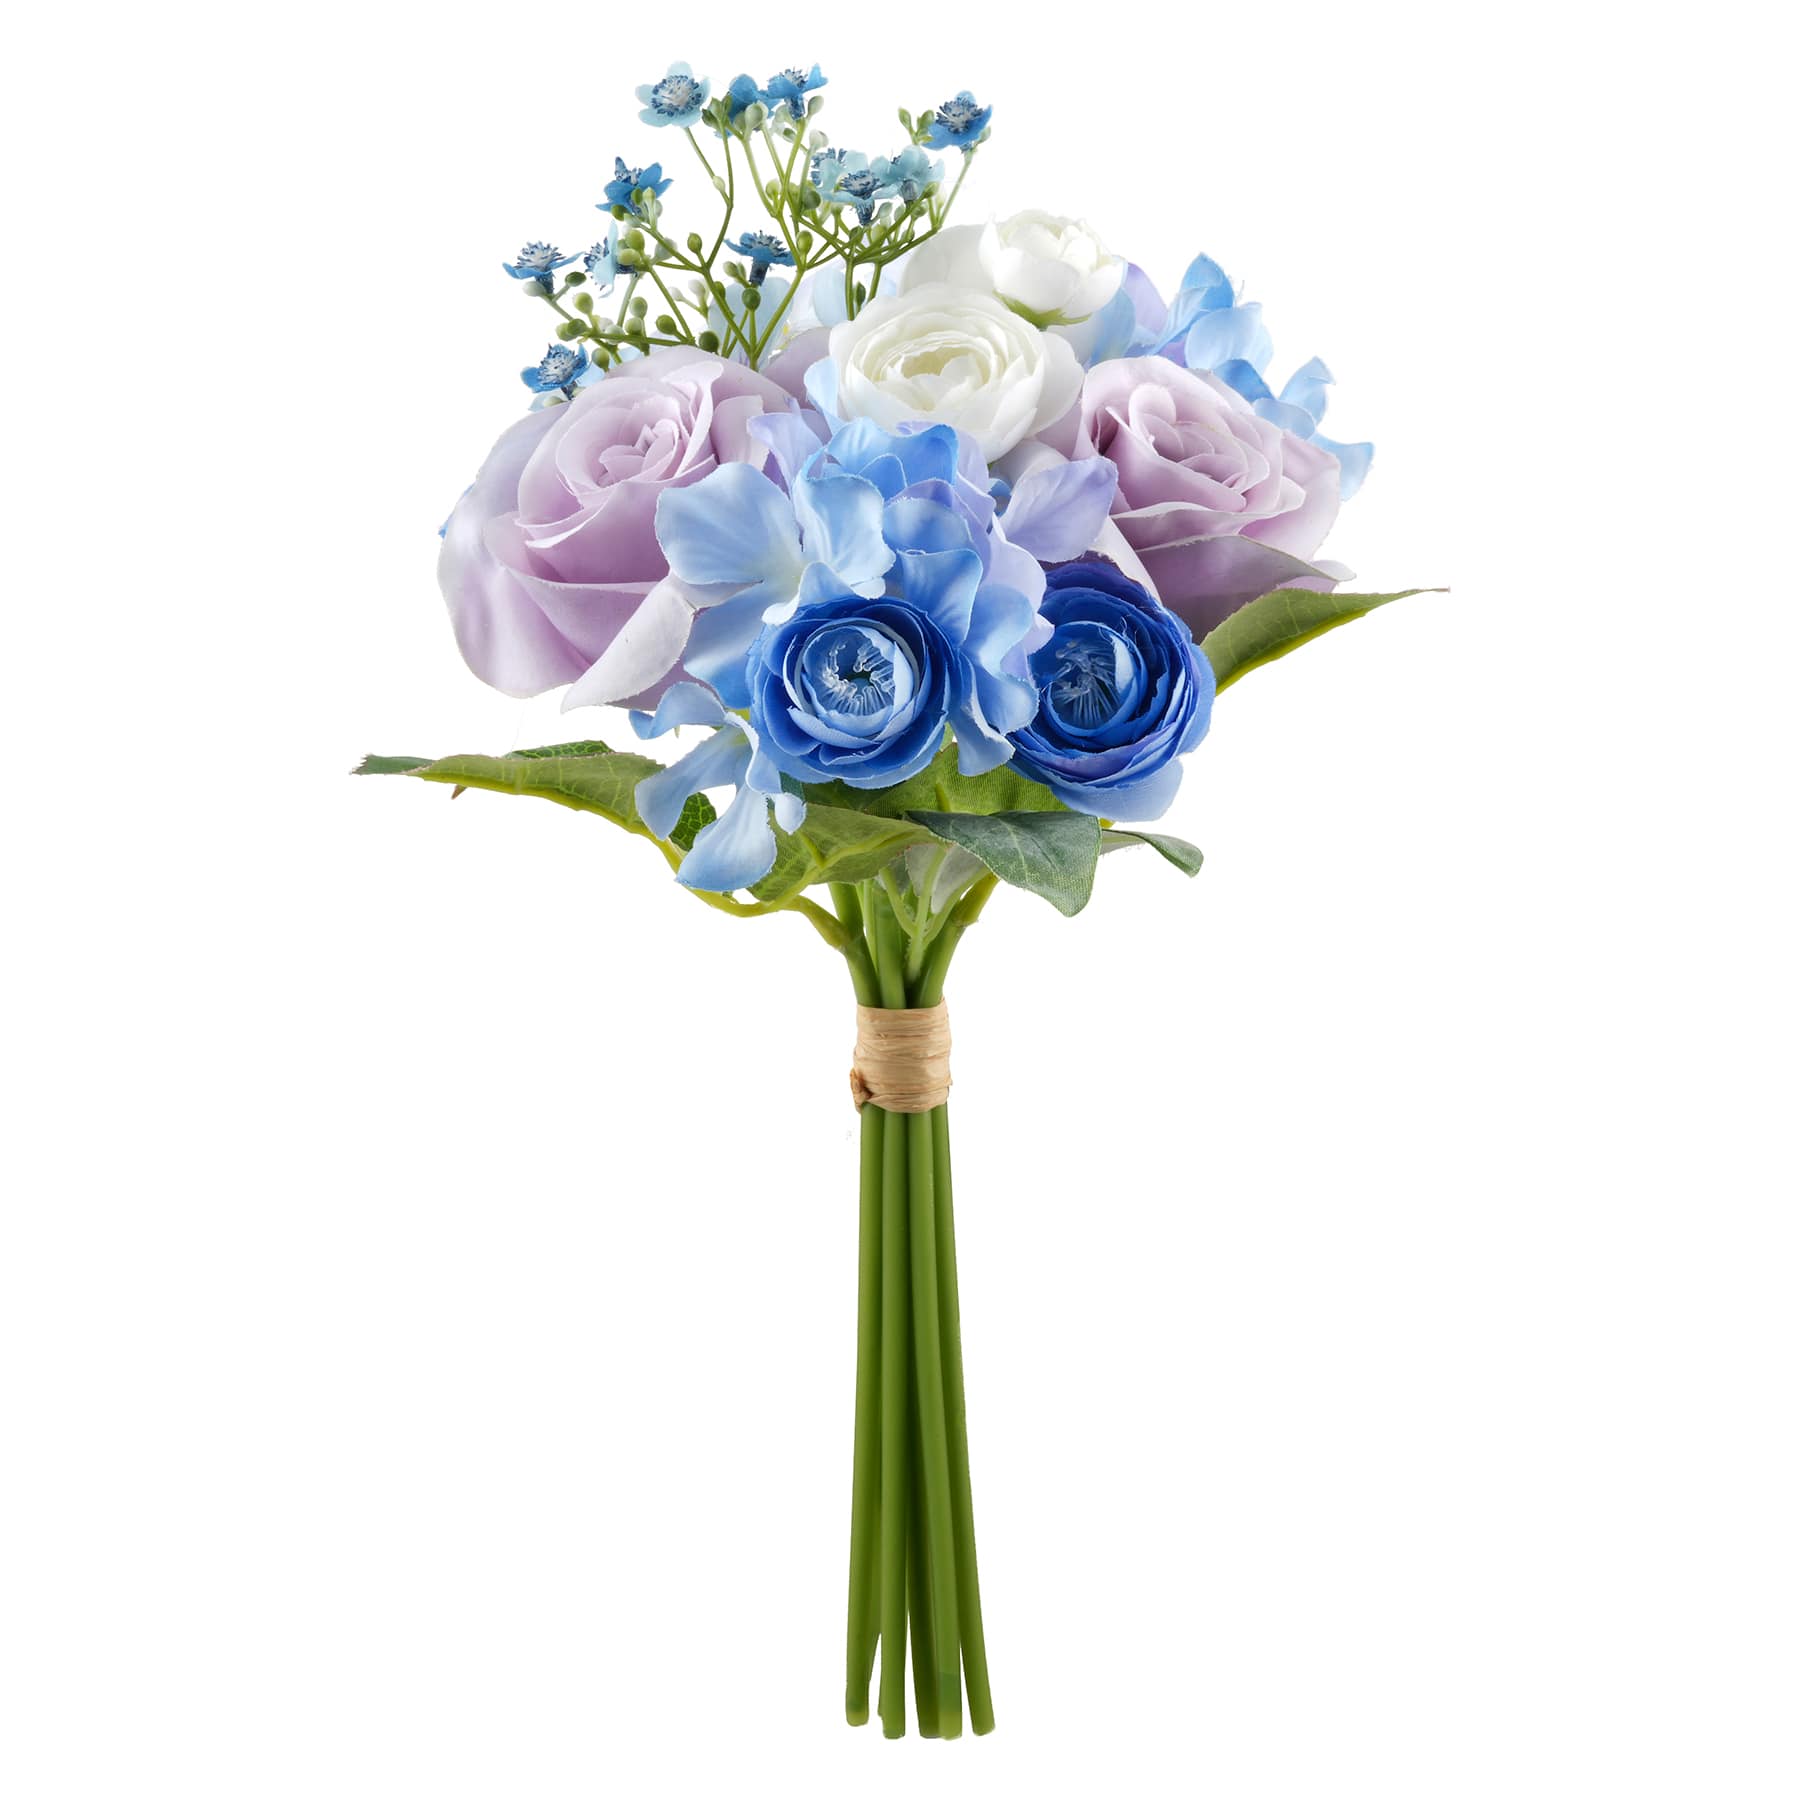 30 Pcs Mini Dried Flower Bouquet Magnet Bulk Wedding Favors for